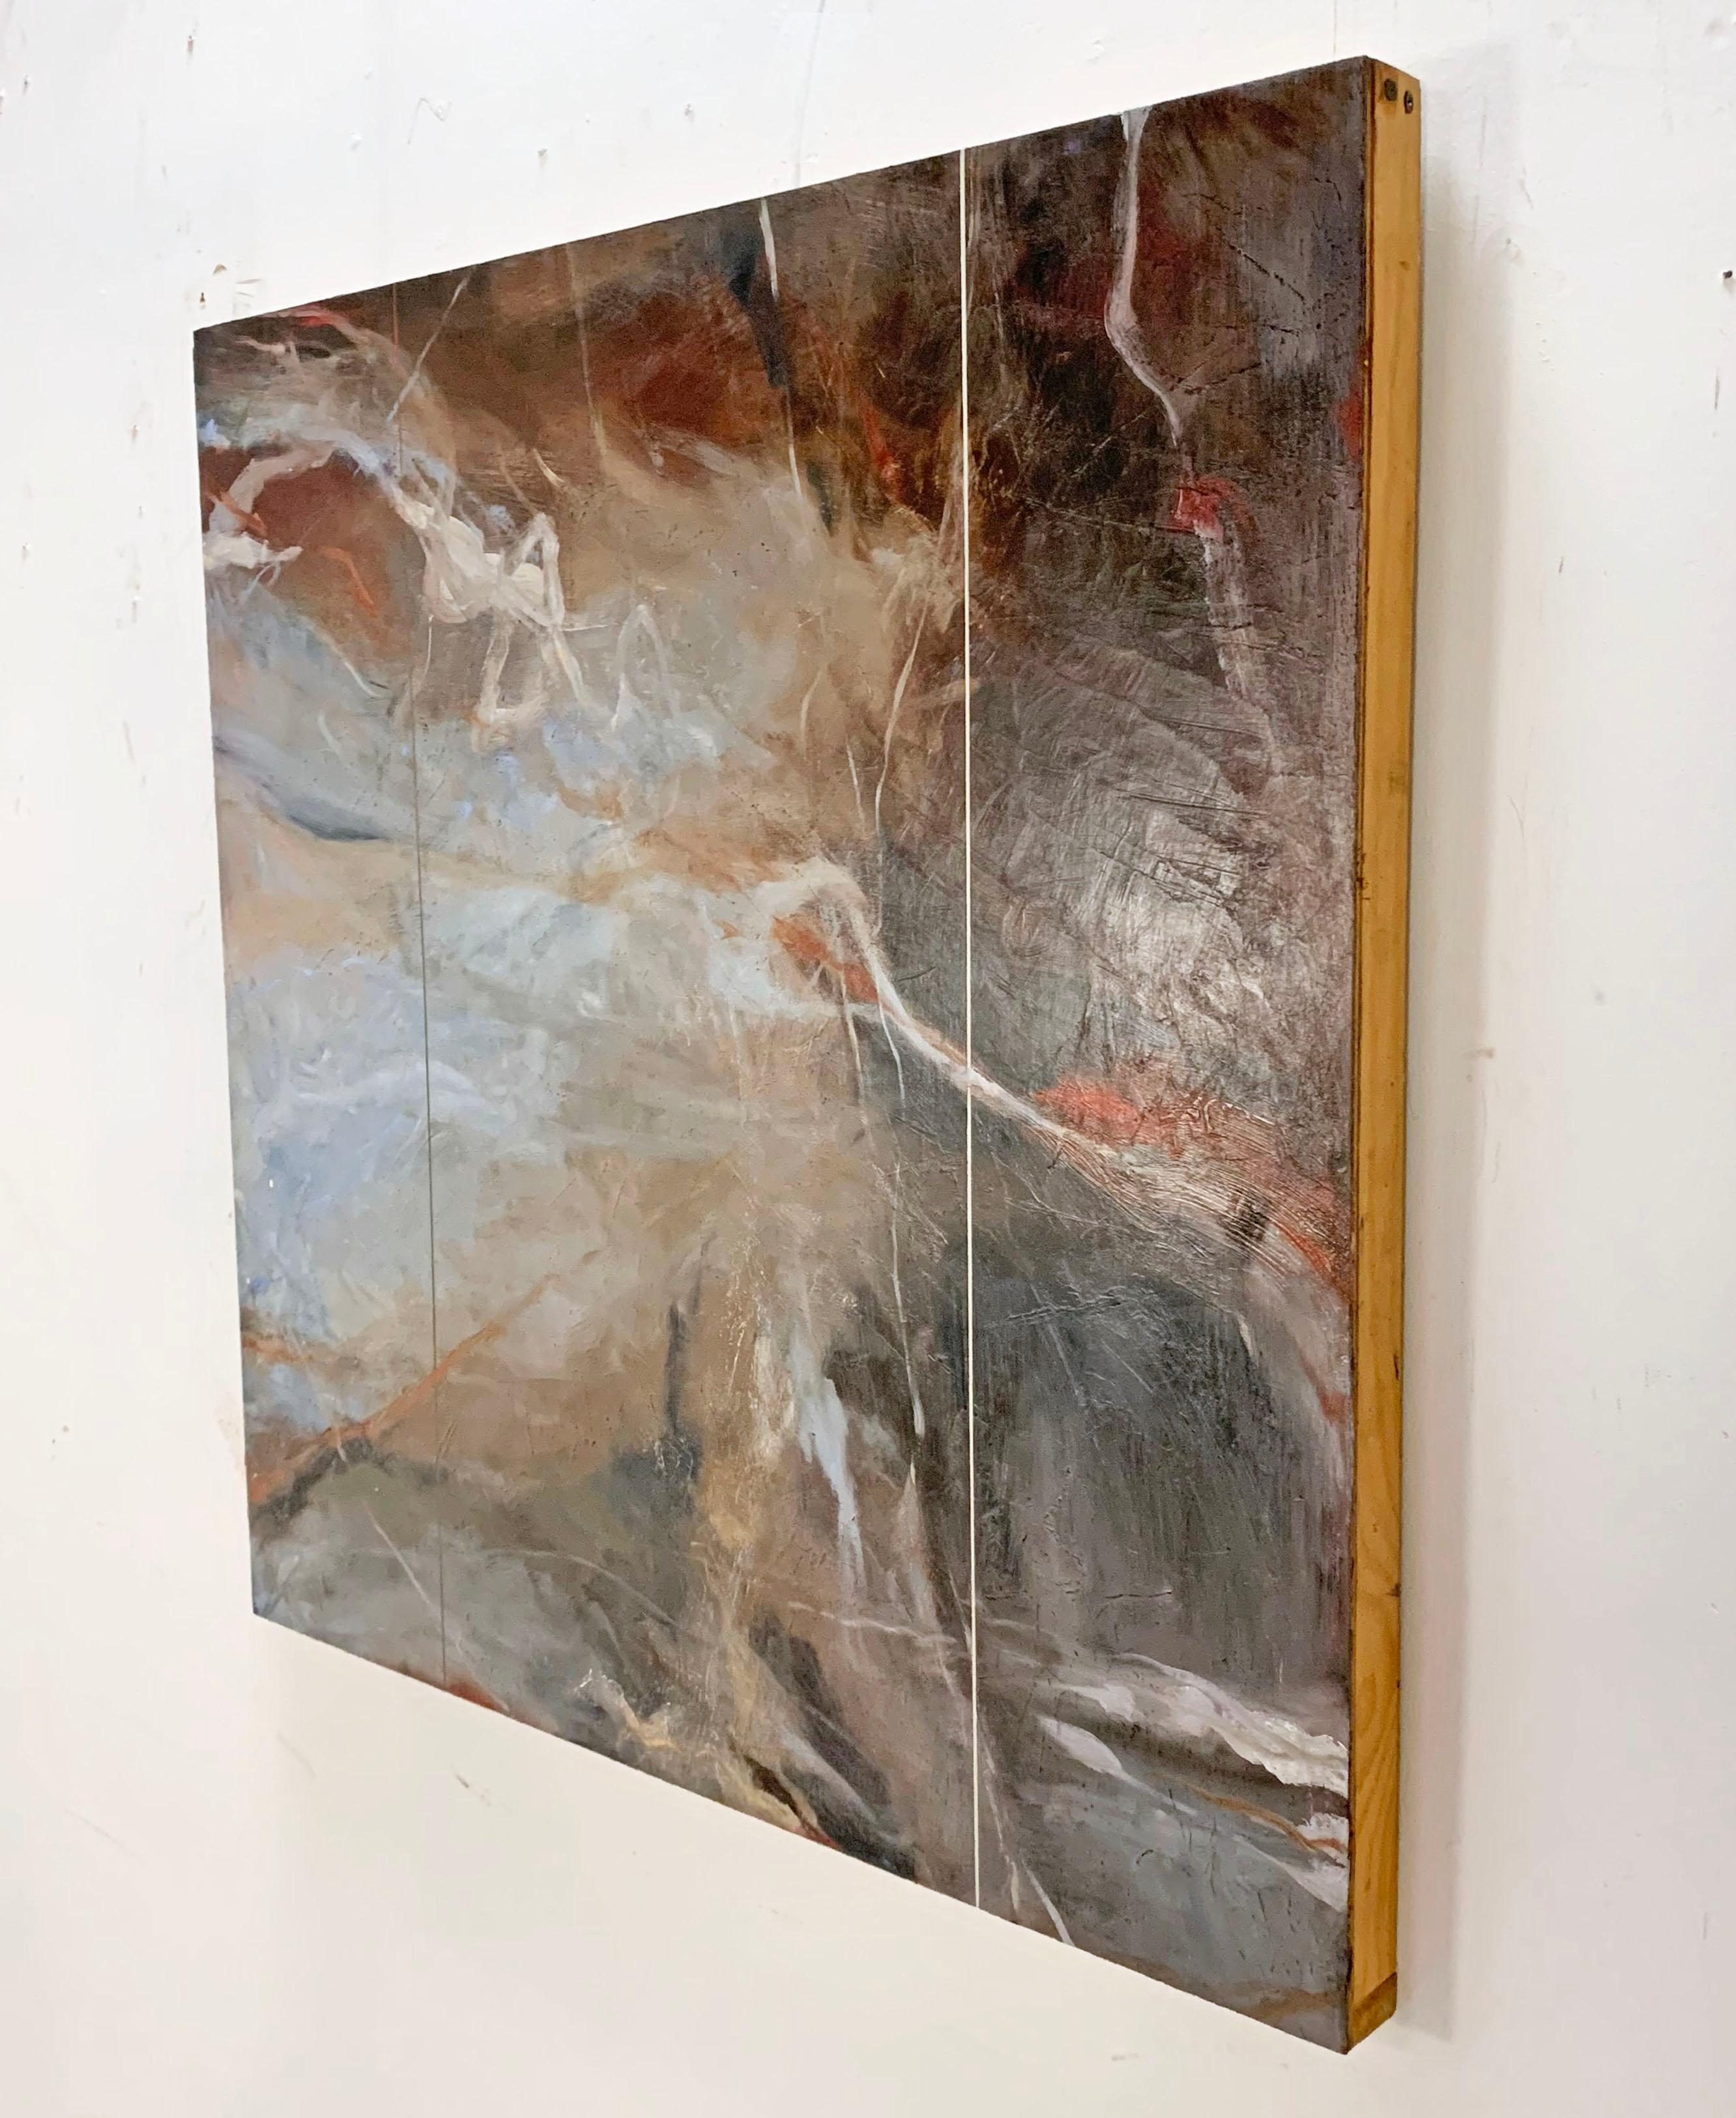 Faux-triptyque atmosphérique abstrait postmoderne de la célèbre artiste du Massachusetts Judith Solomon, daté de 1998. Il y a un attrait presque romantique dans cette œuvre, qui rappelle les tableaux de tempête de l'artiste anglais J.M.W. Turner,